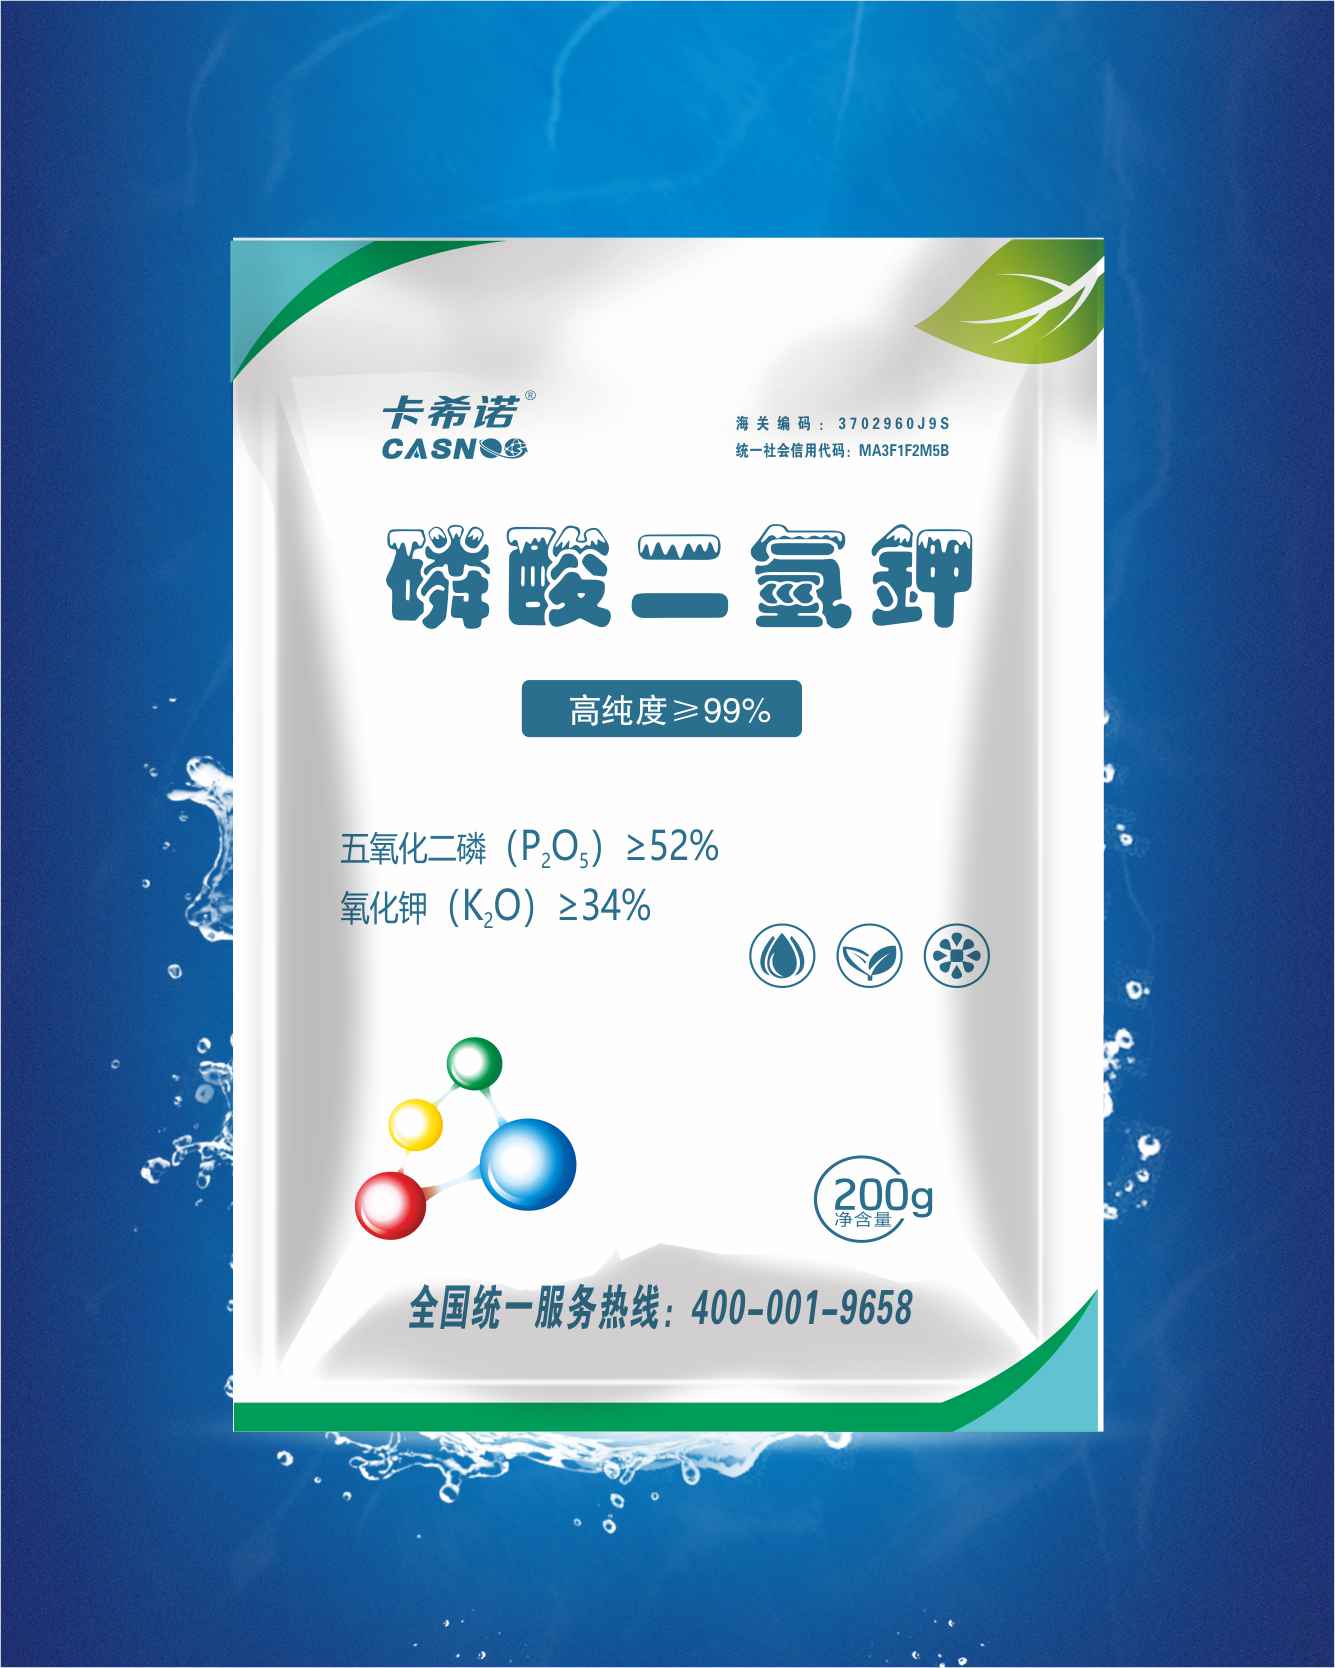 亚磷酸钾1400g - 磷酸二氢钾 - 蕾诺（北京）生物科技有限公司官网丨蕾诺特种肥丨蕾诺特种肥料：特种叶面肥、特种冲施肥、特种水溶肥